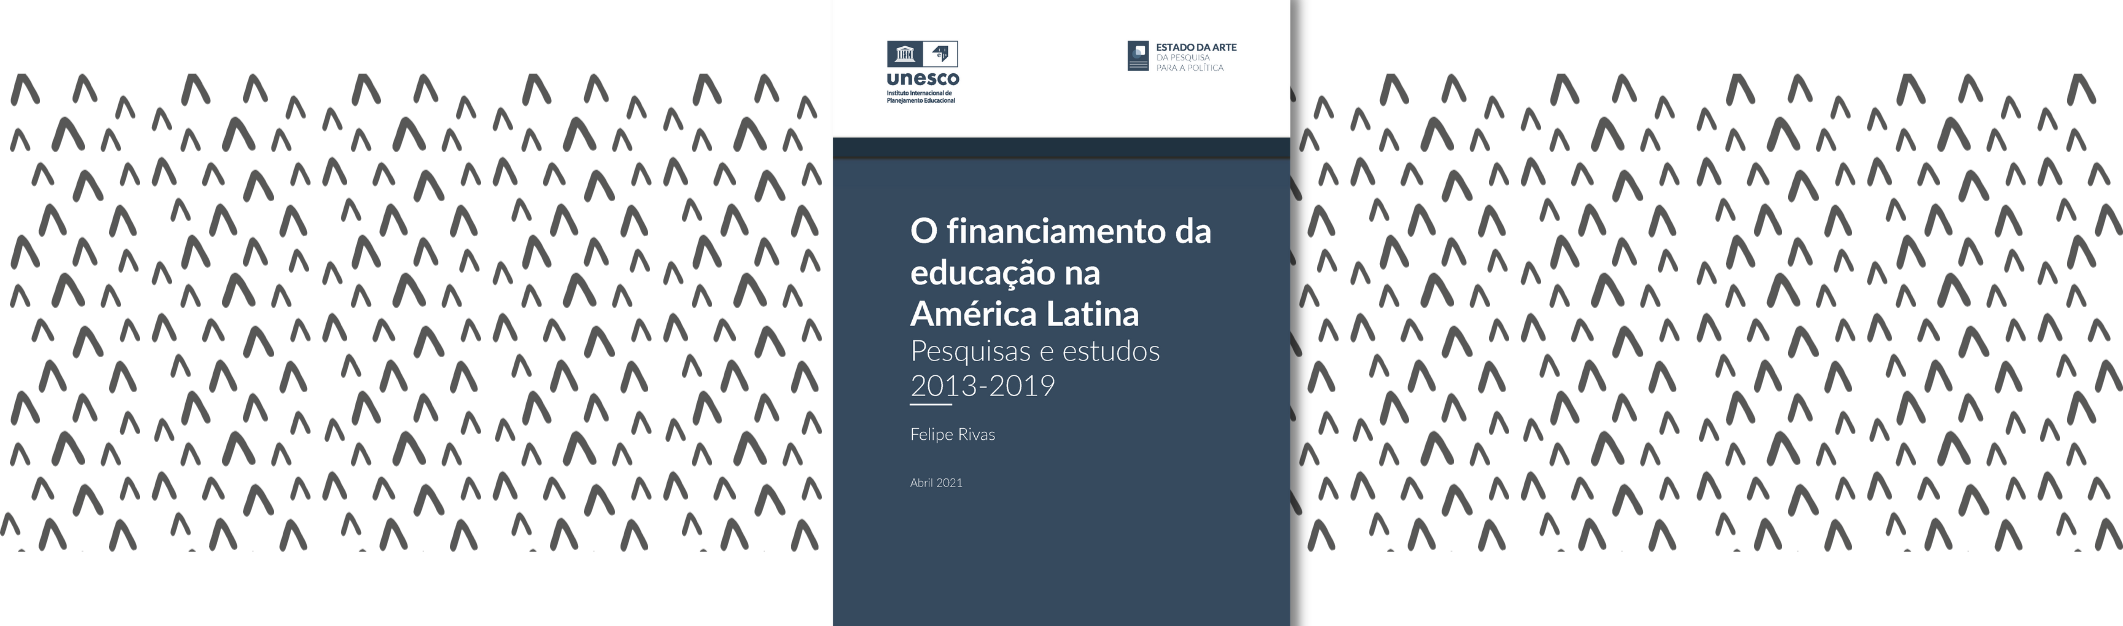 O Financiamento da educação na América Latina: pesquisas e estudos 2013-2019